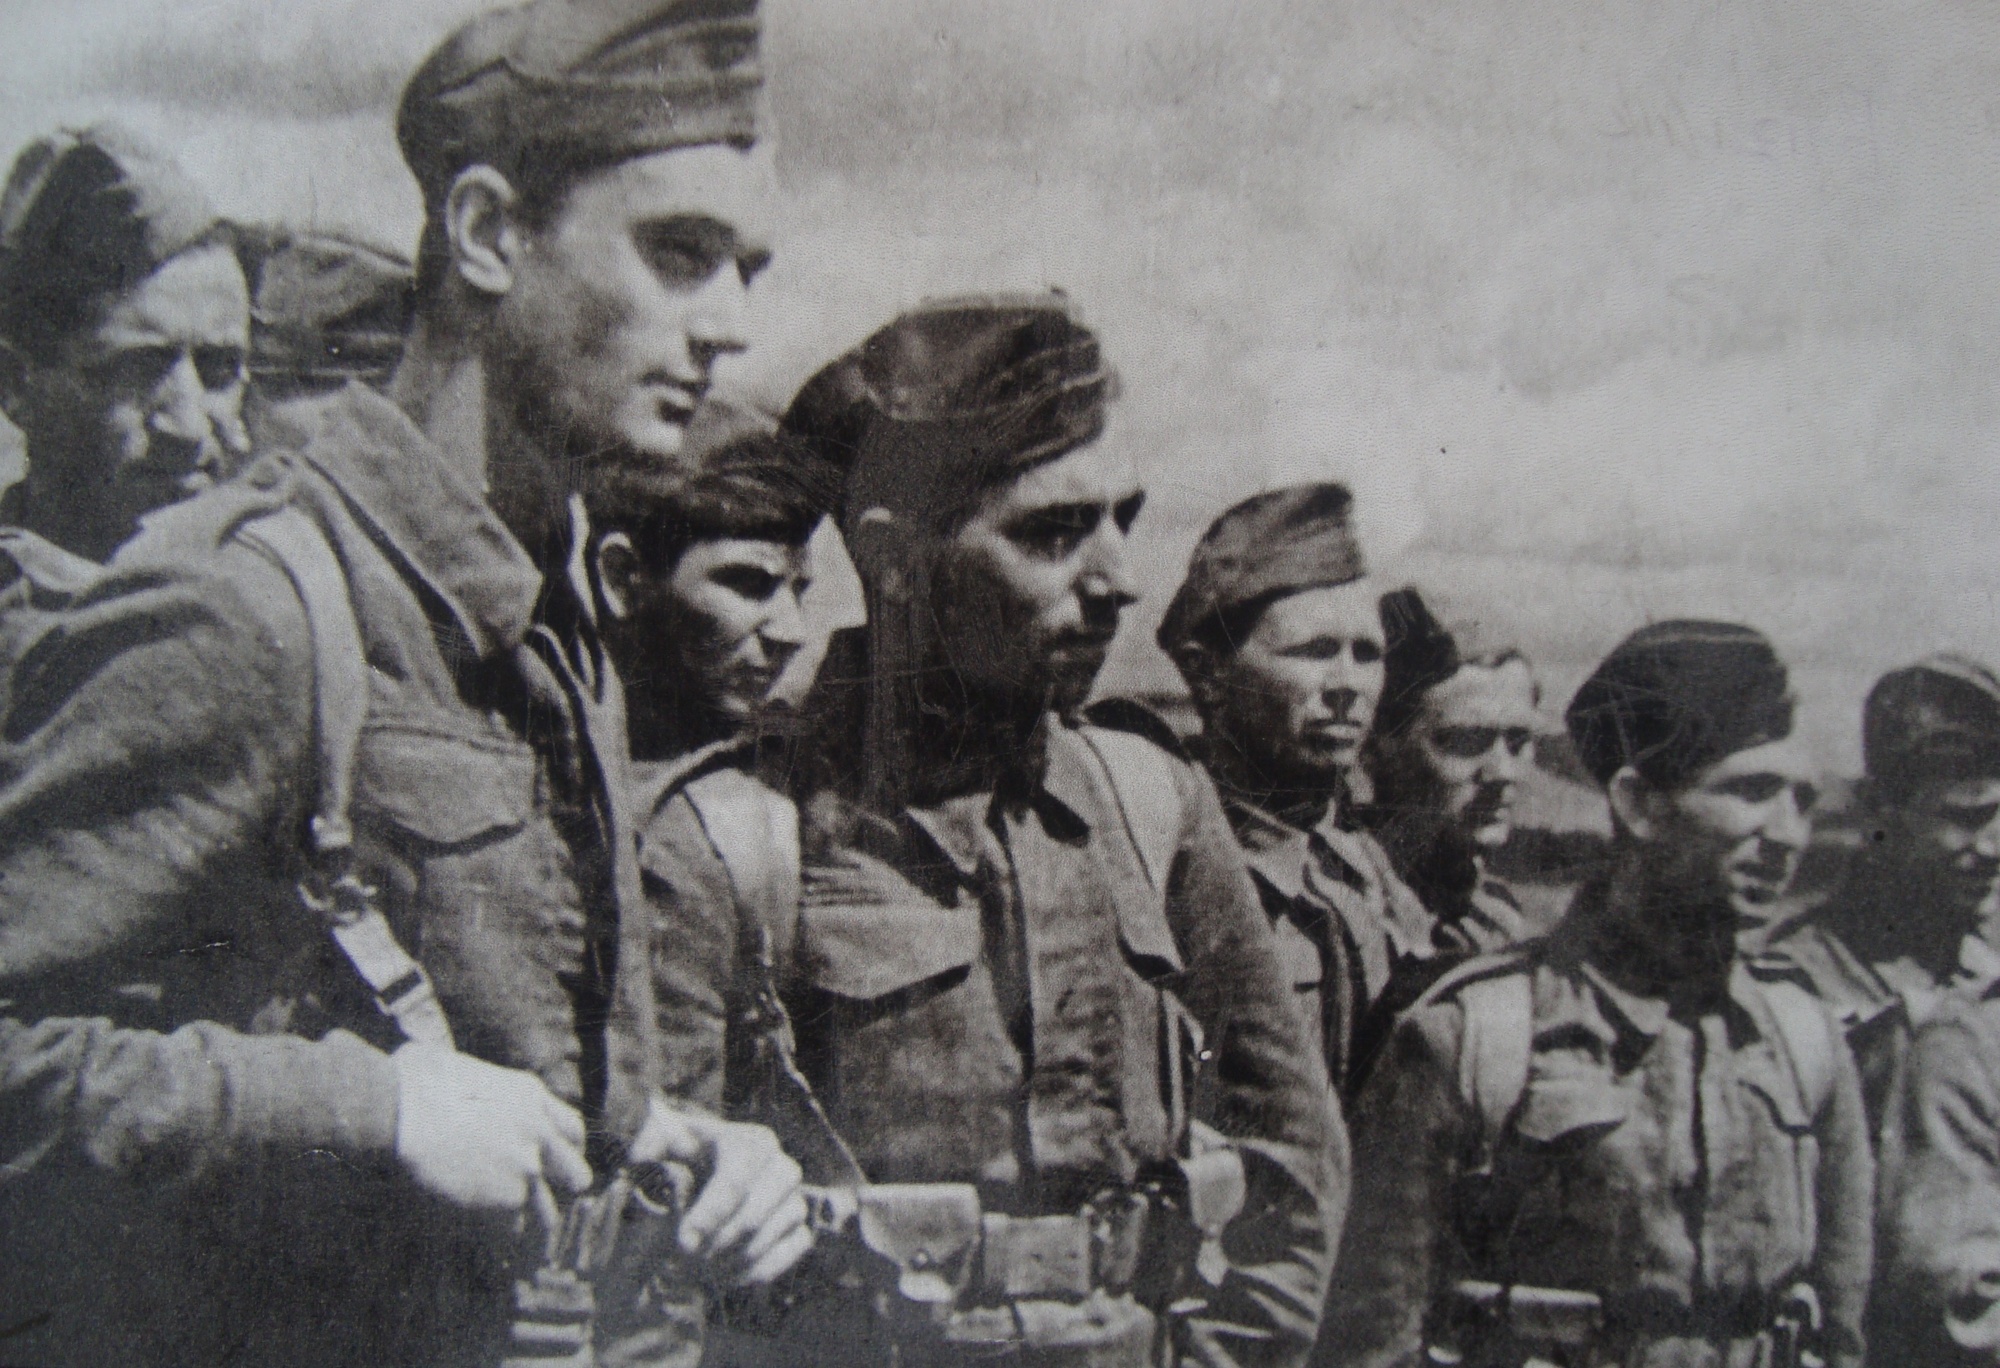 Václav Přibyl - second from left, Buzuluk